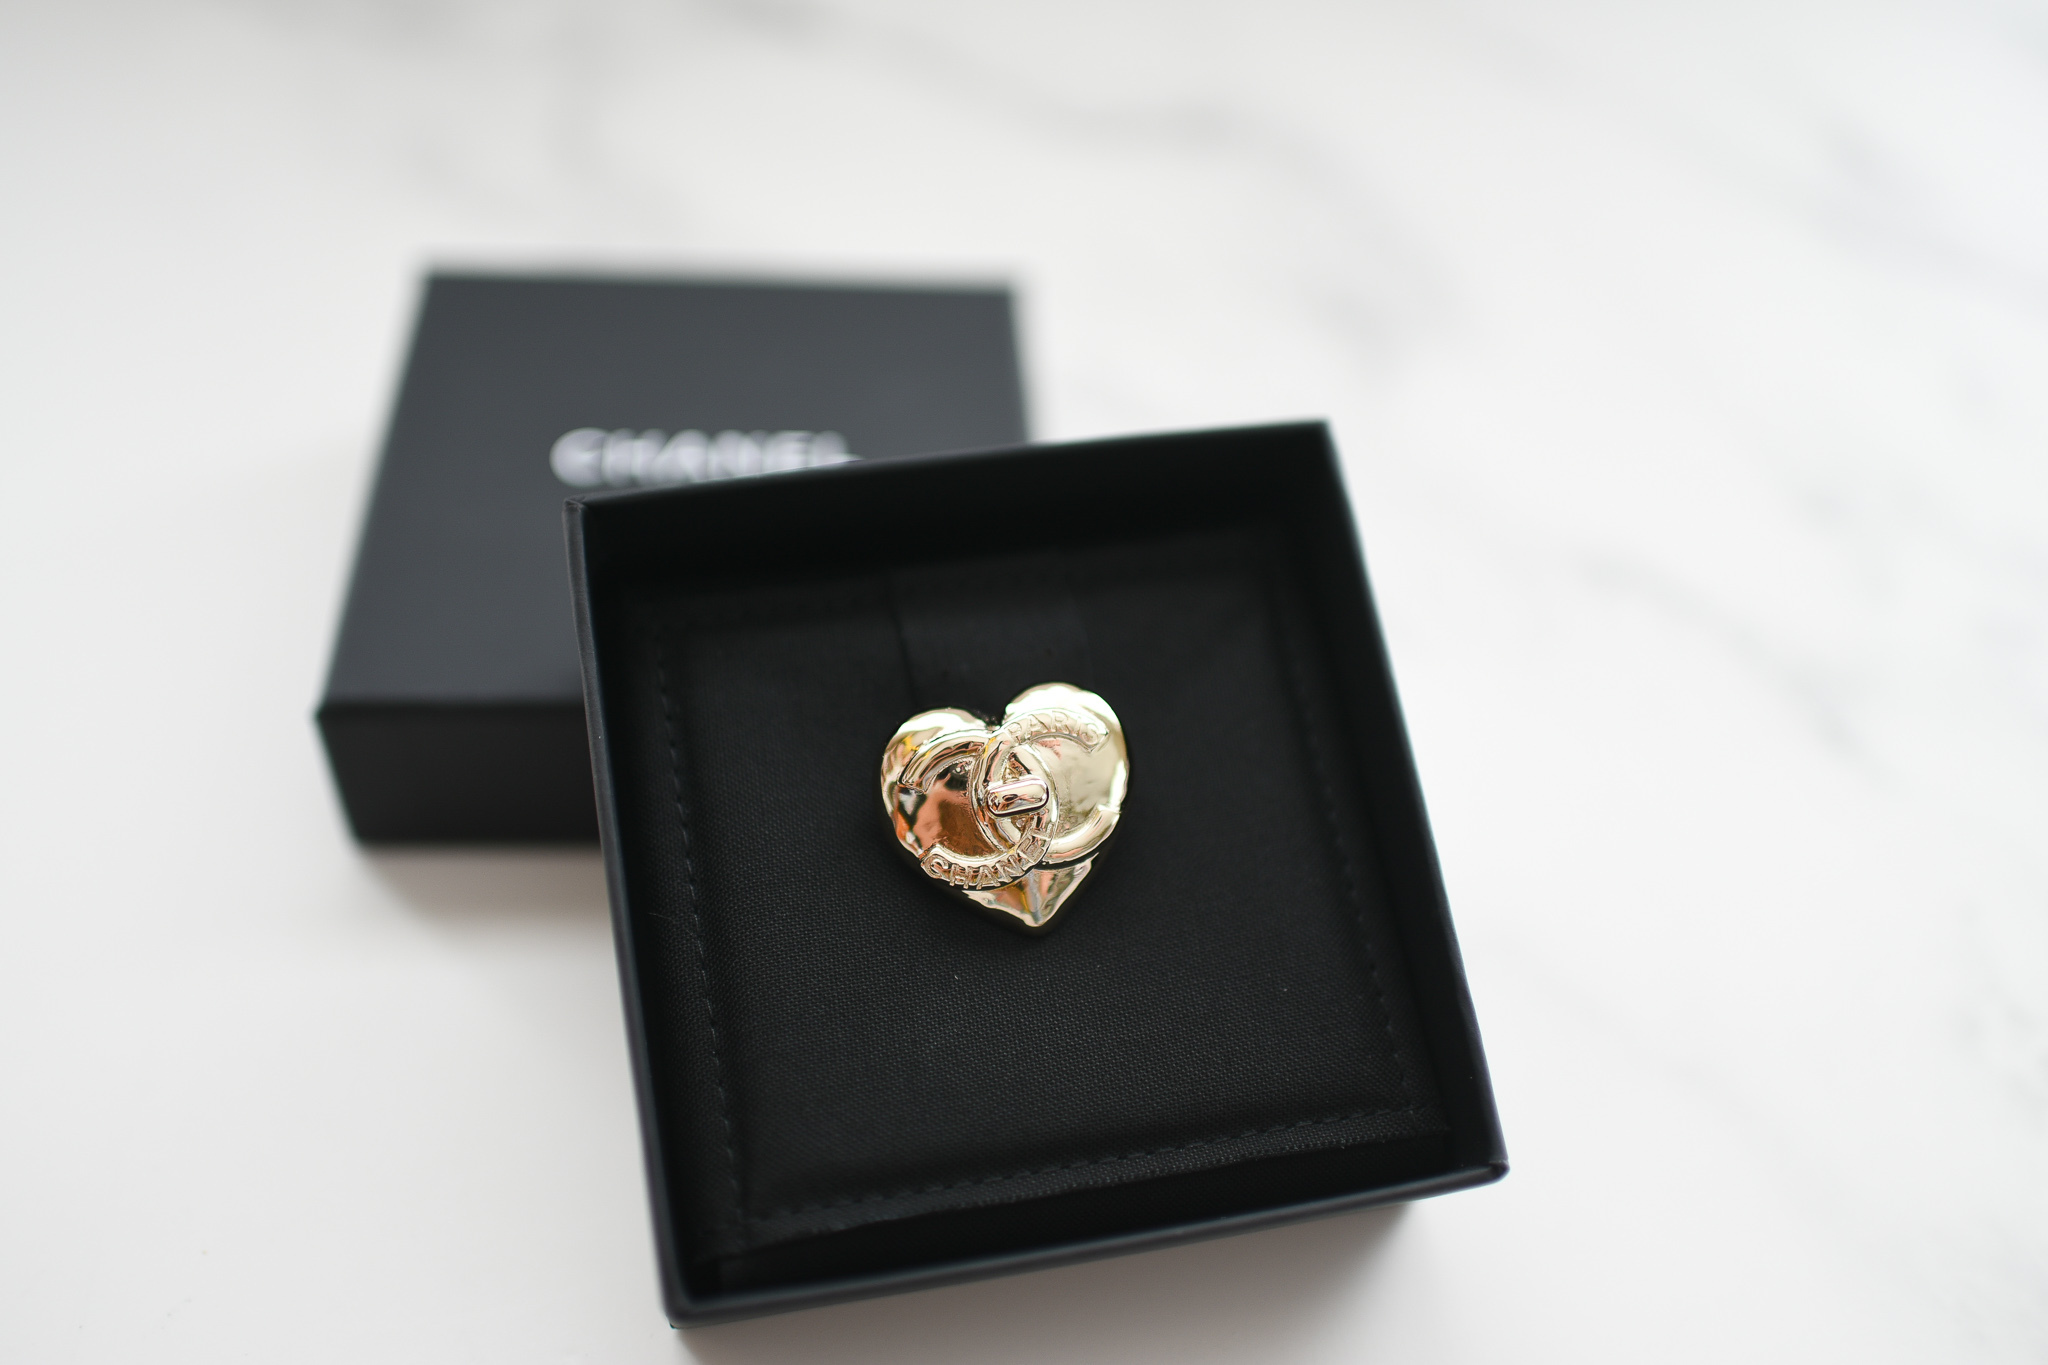 Chanel CC Turnlock Heart Brooch in Gold (No Stone), New in Box GA001 -  Julia Rose Boston